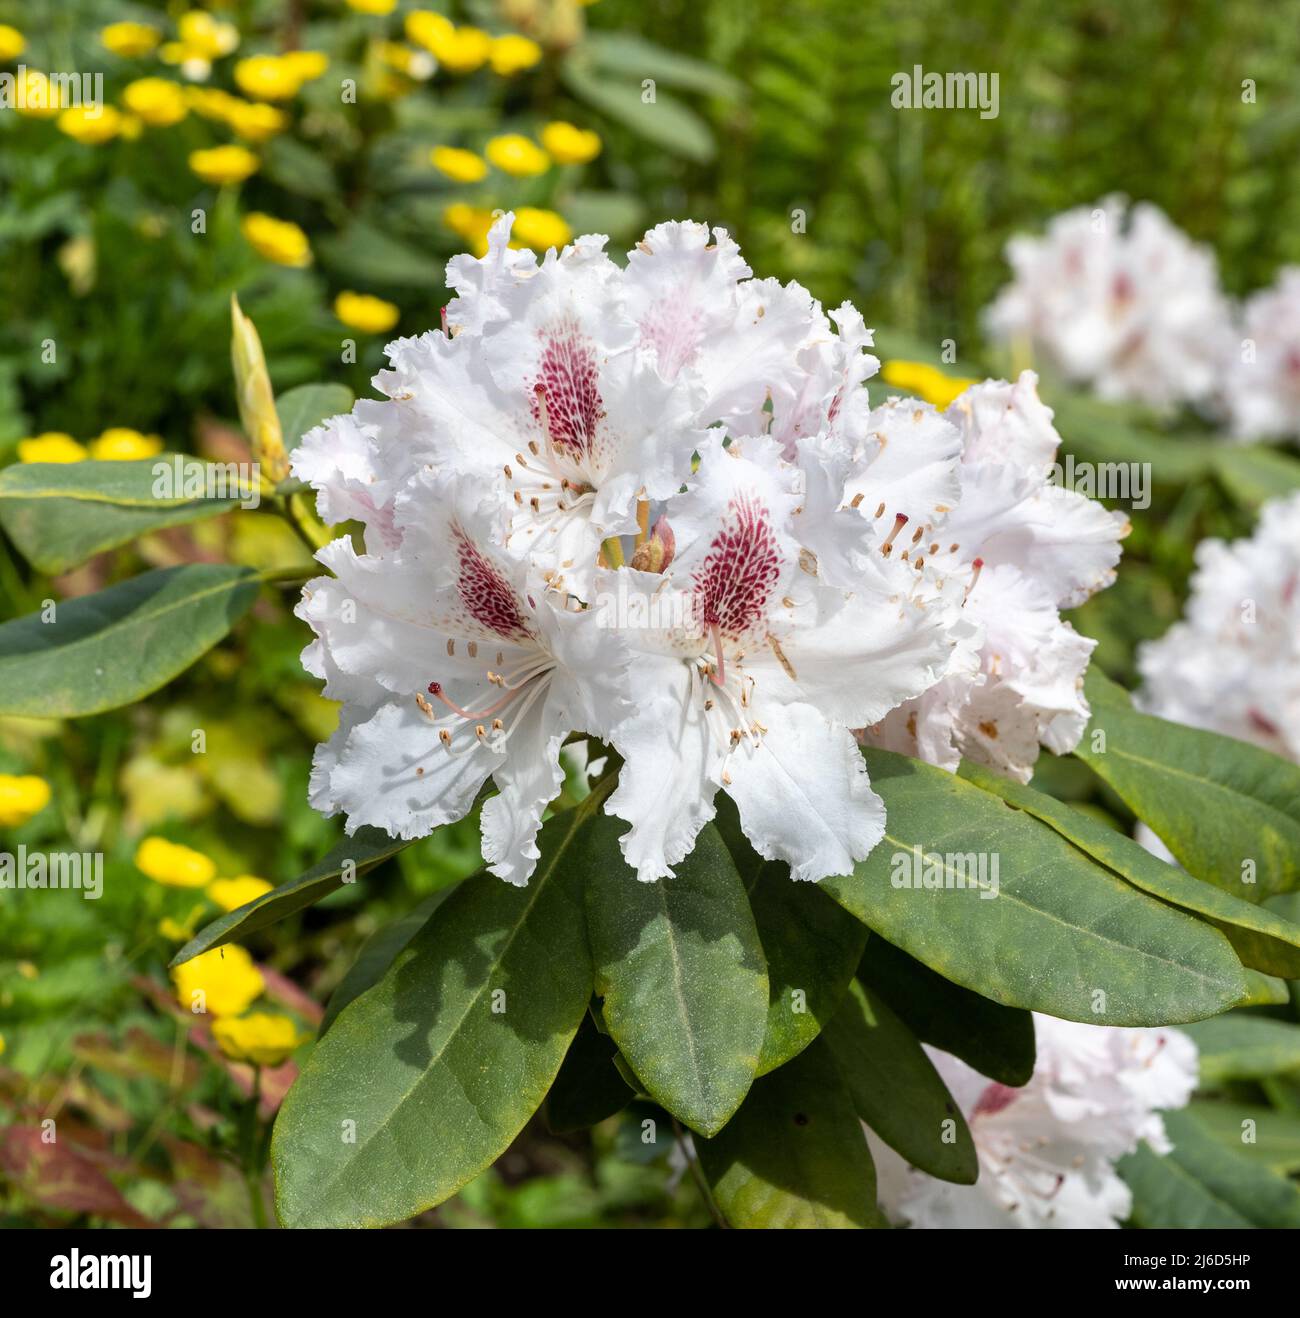 Primo piano dei fiori di rododendro. Baden-Baden, Baden Wuerttemberg, Germania Foto Stock